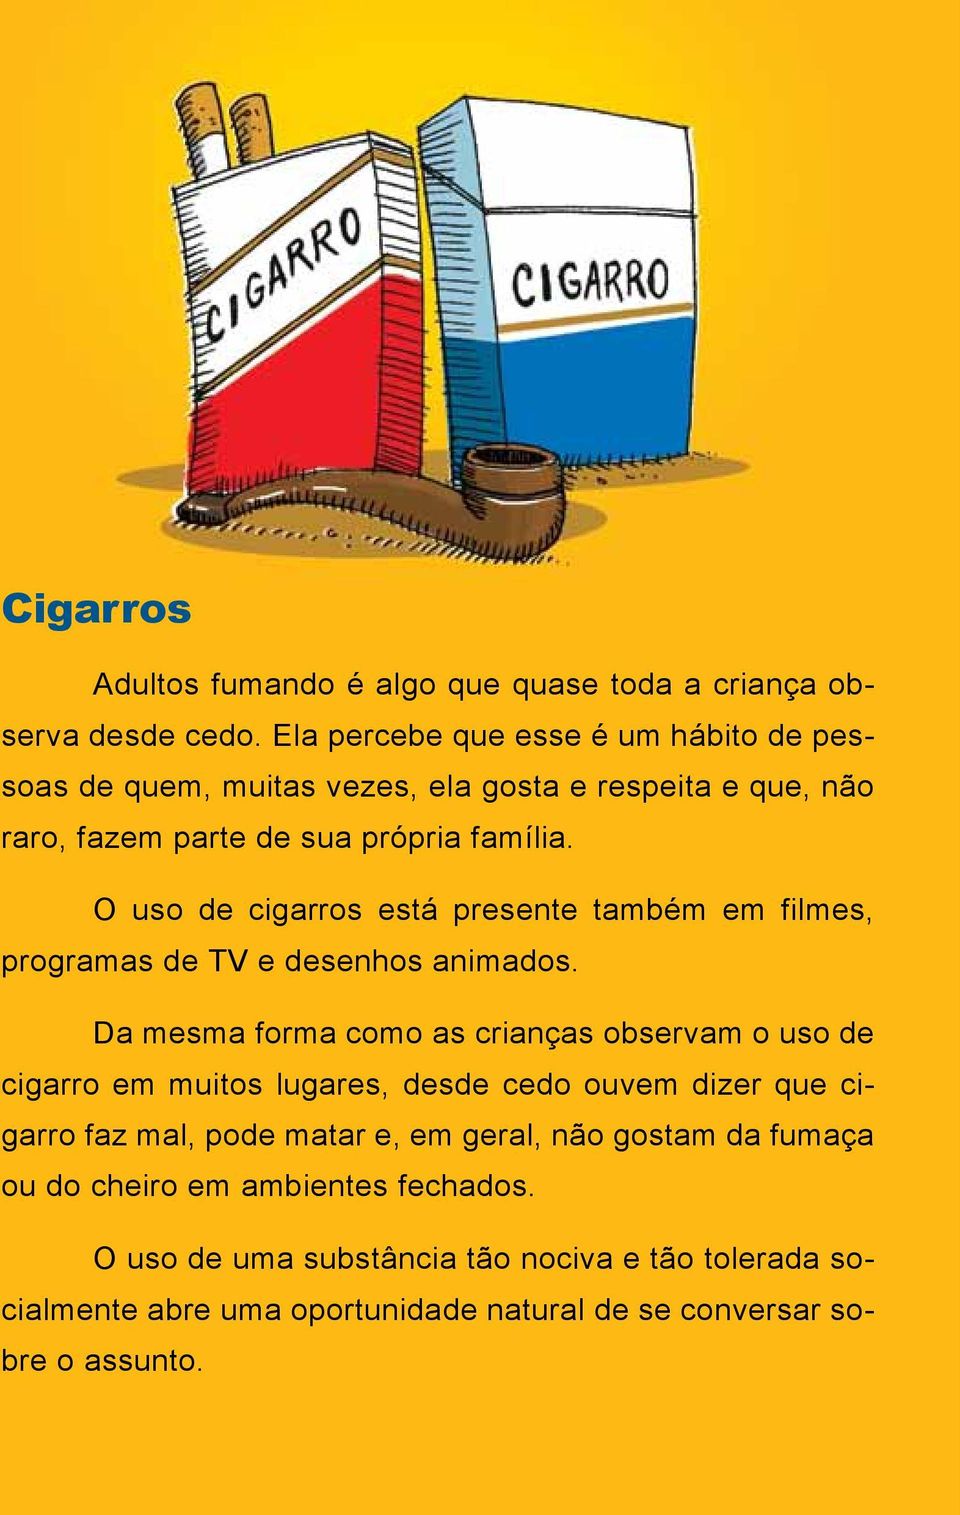 O uso de cigarros está presente também em filmes, programas de TV e desenhos animados.